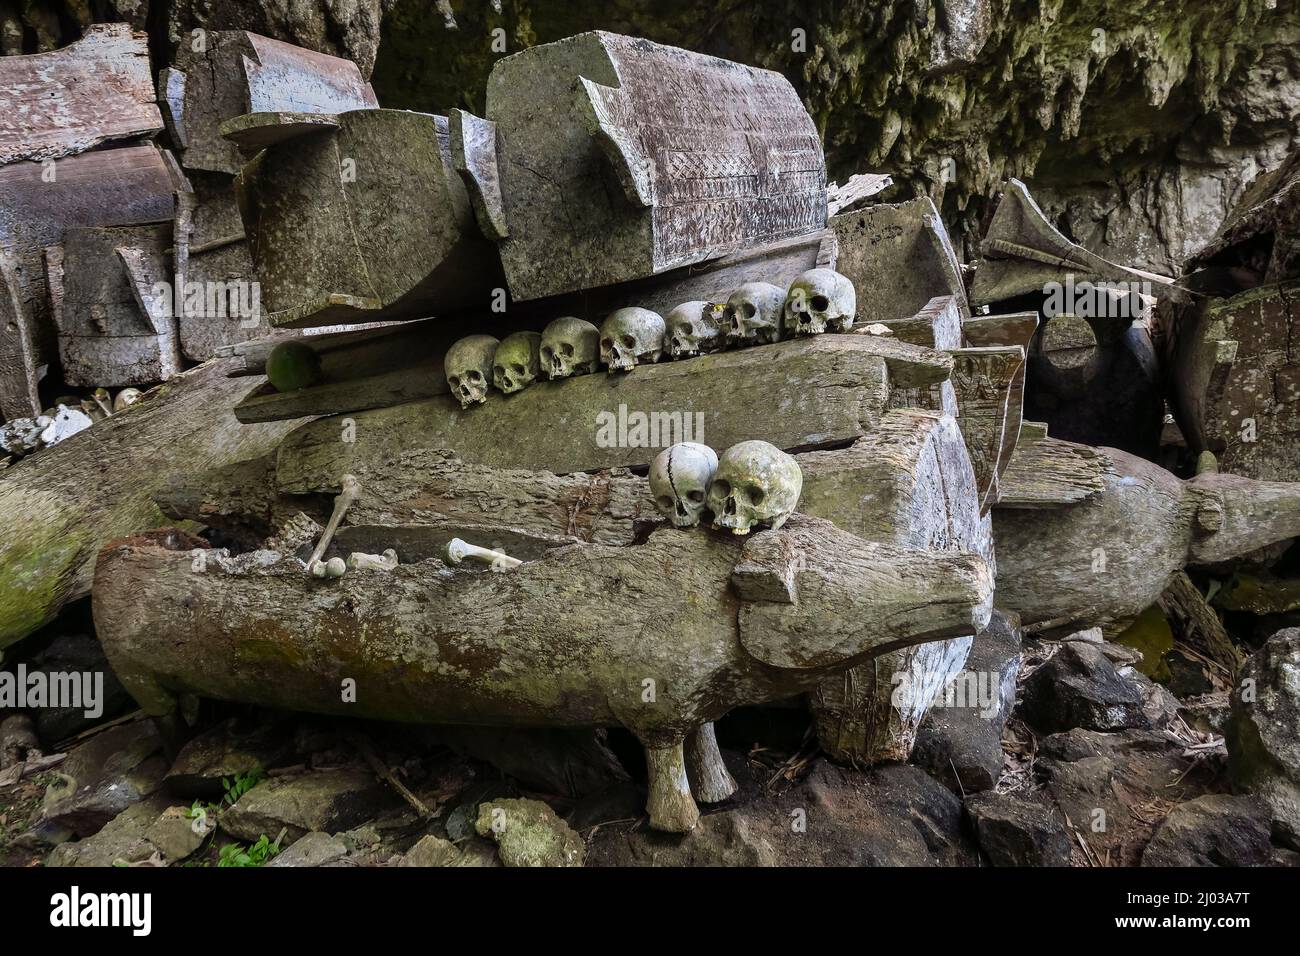 Crânes sur des cercueils dans une grotte funéraire de 700 ans à Parinding, au nord de Rantepao, Lombok Parading, Toraja, Sulawesi du Sud, Indonésie Banque D'Images